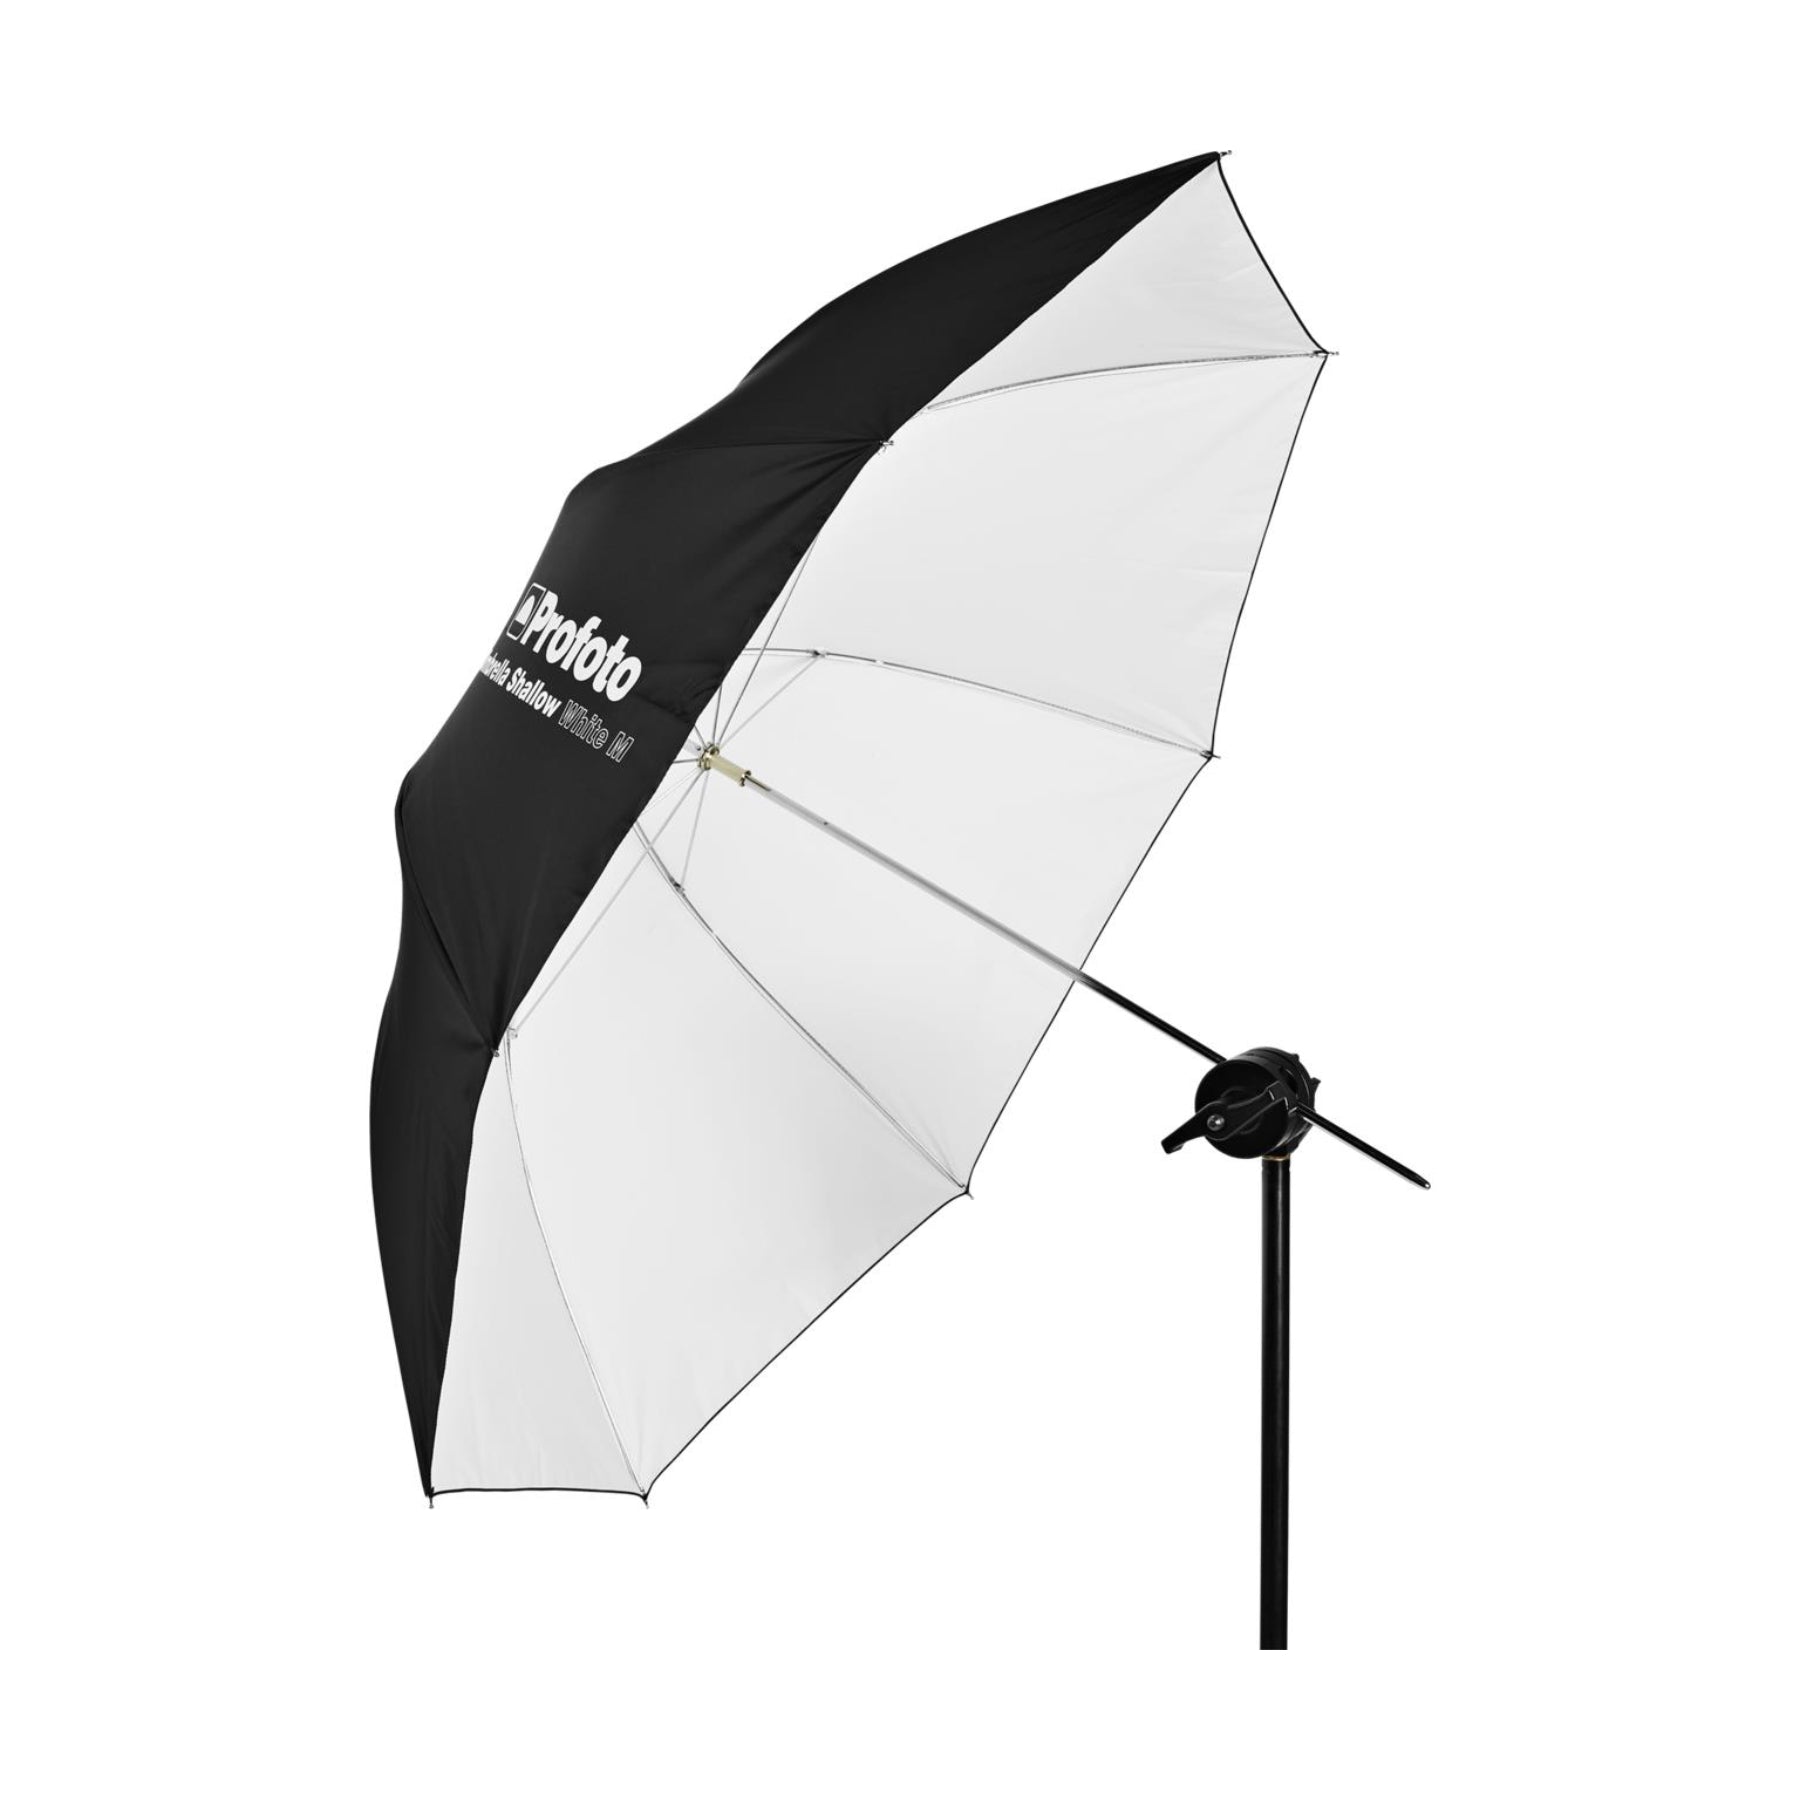 Buy Profoto Umbrella Shallow White | Topic Store